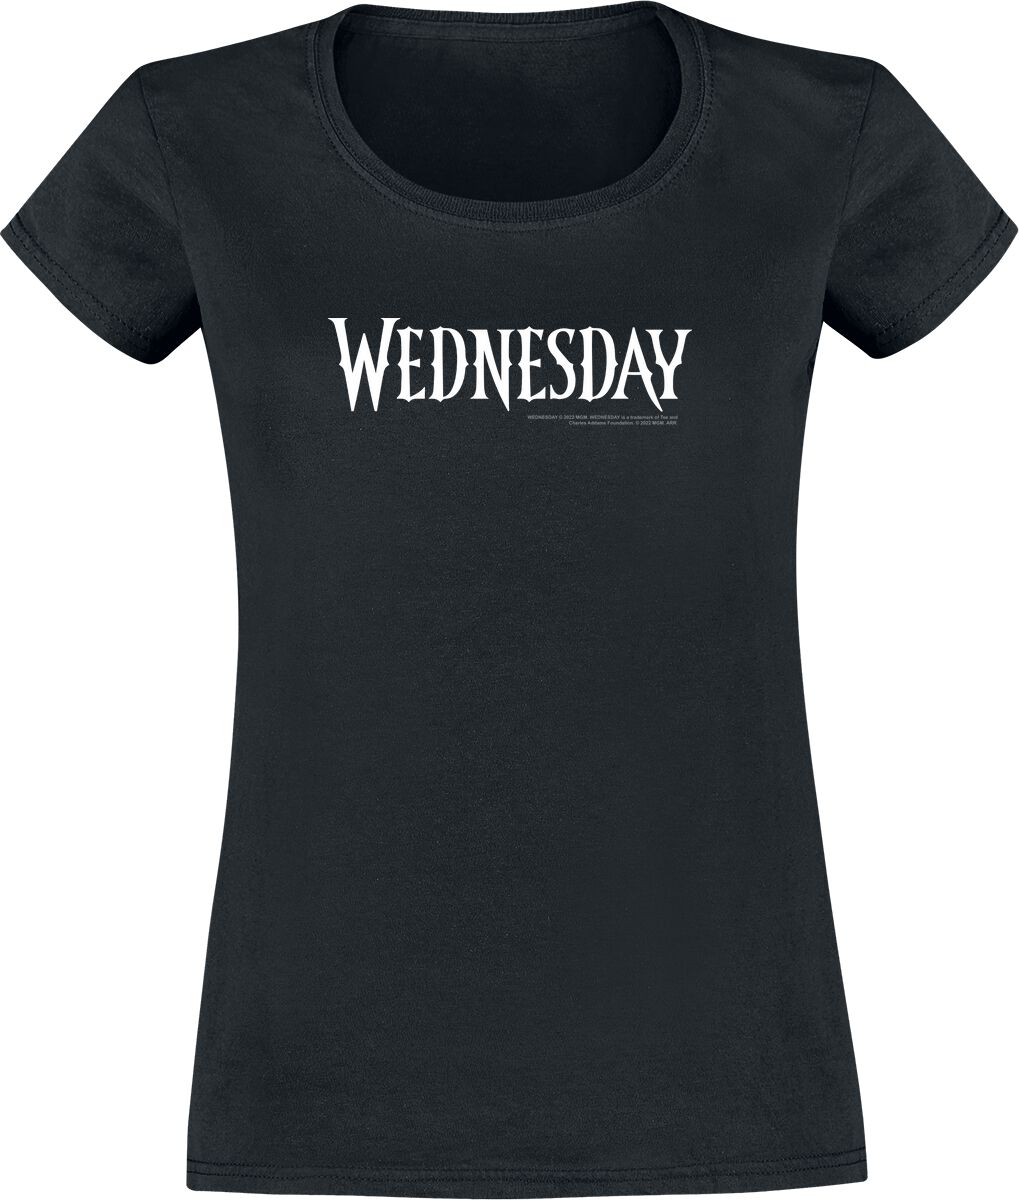 T-Shirt Manches courtes de Wednesday - S à XXL - pour Femme - noir